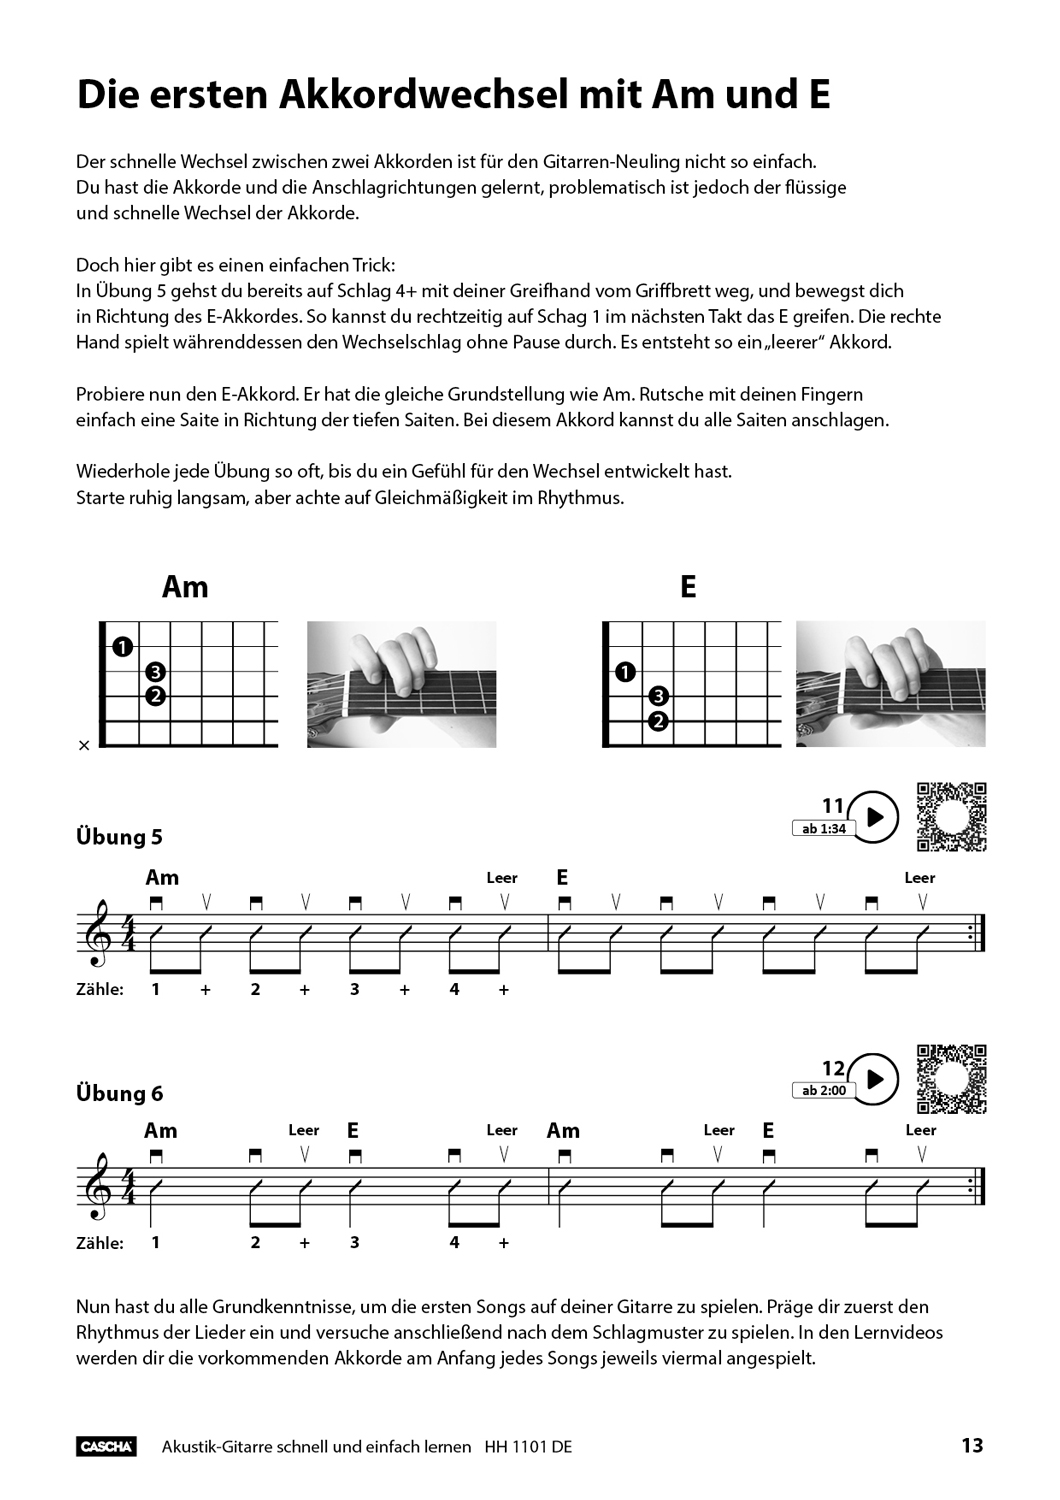 Akustik-Gitarre - Schnell und einfach lernen Bilder 6